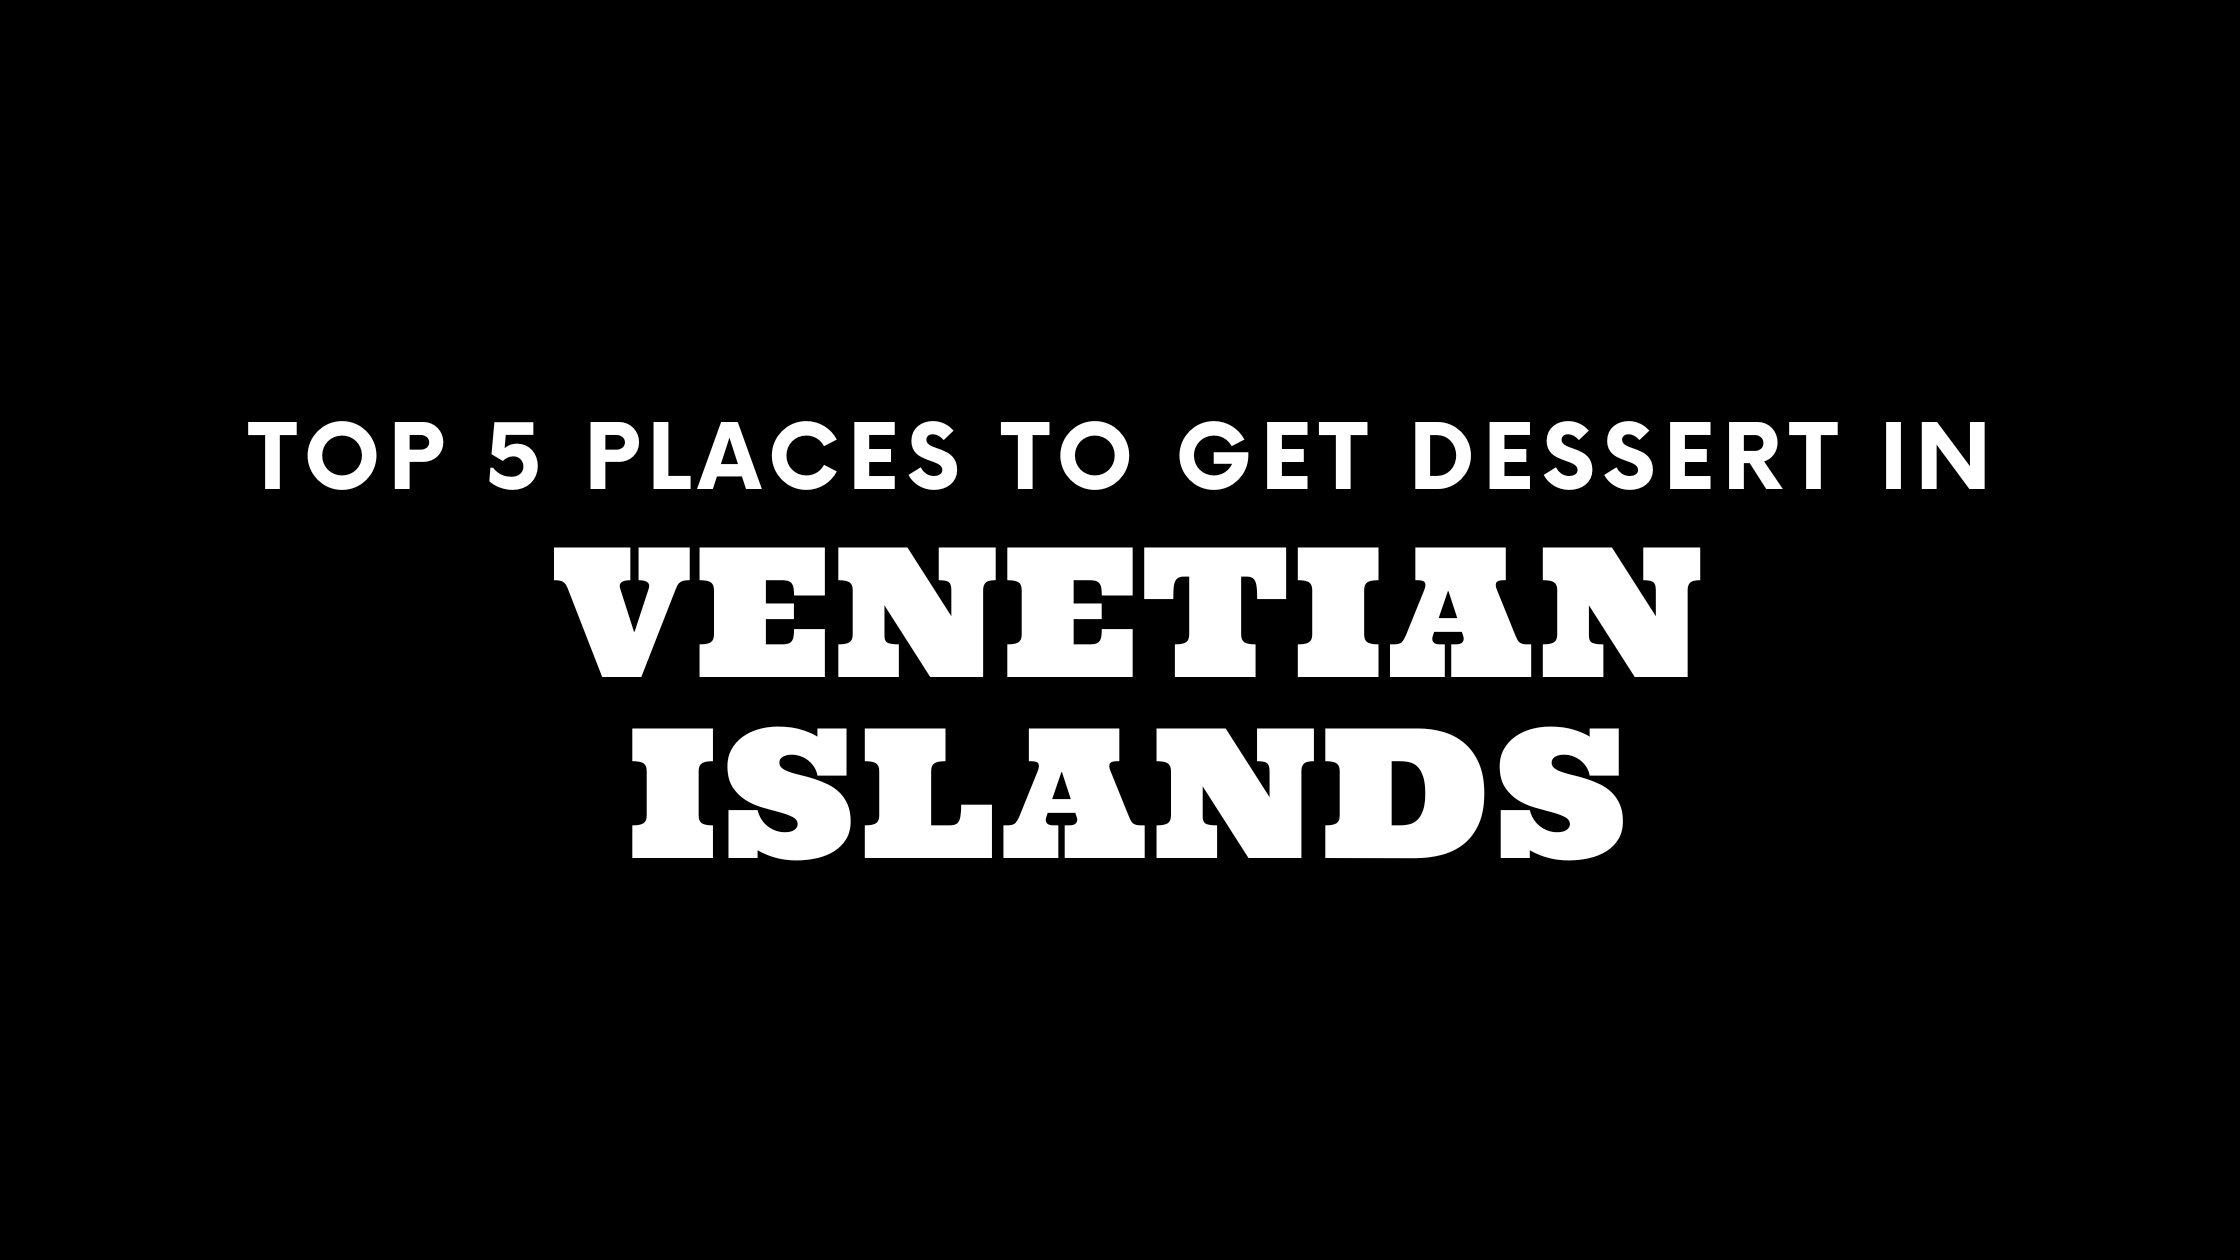 Top 5 Places to Get Dessert in Venetian Islands